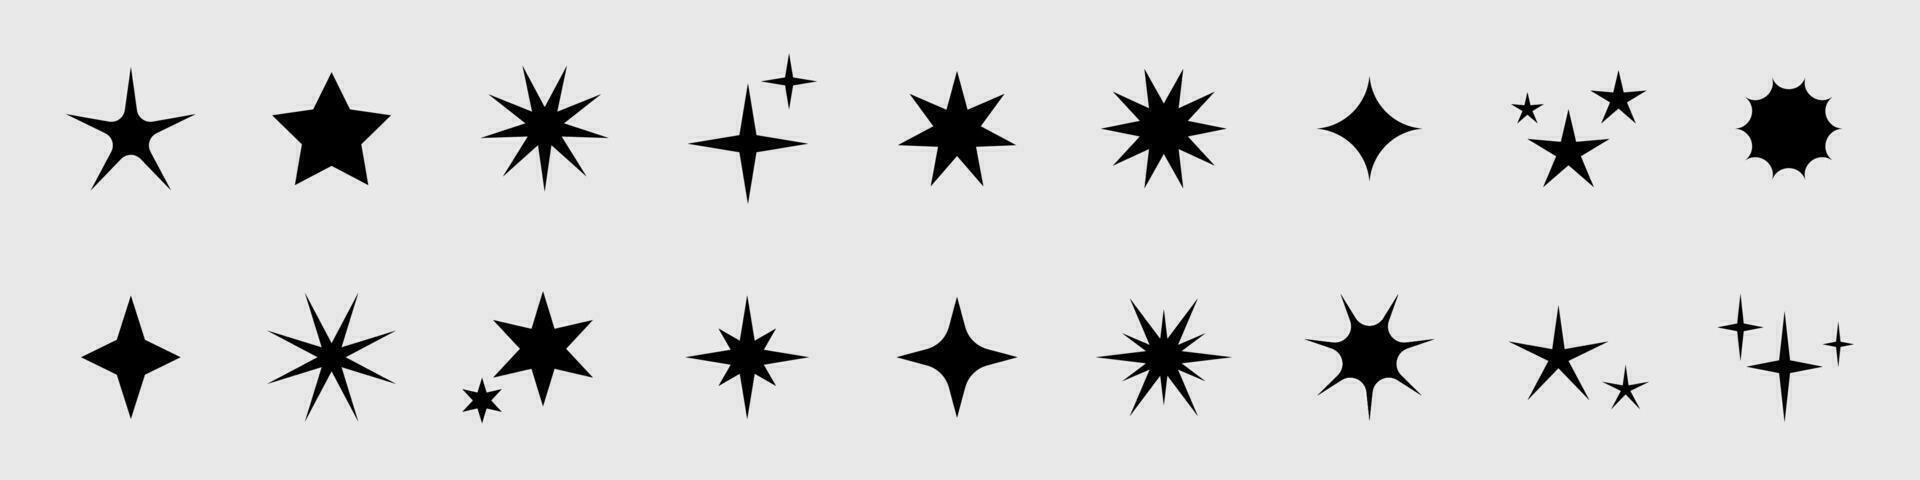 vector retro reeks van futuristische fonkeling pictogrammen. verzameling van ster vormen. y2k abstract tekens. abstract koel schijnen jaren 70 80s 90s elementen.